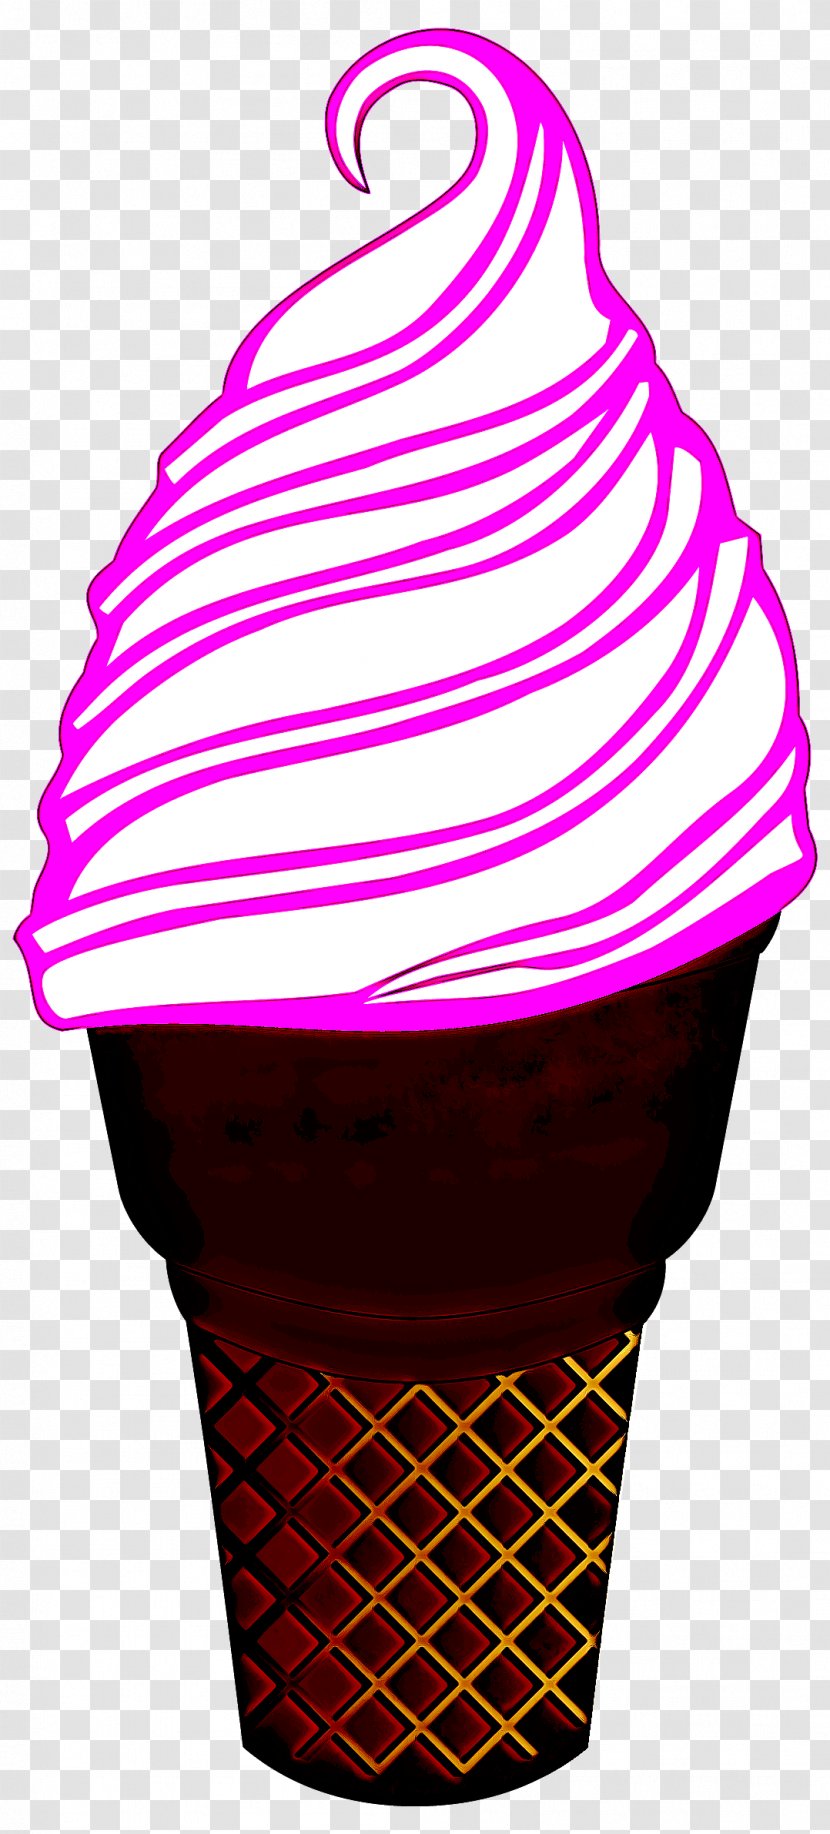 Ice Cream - Cone - Food Magenta Transparent PNG